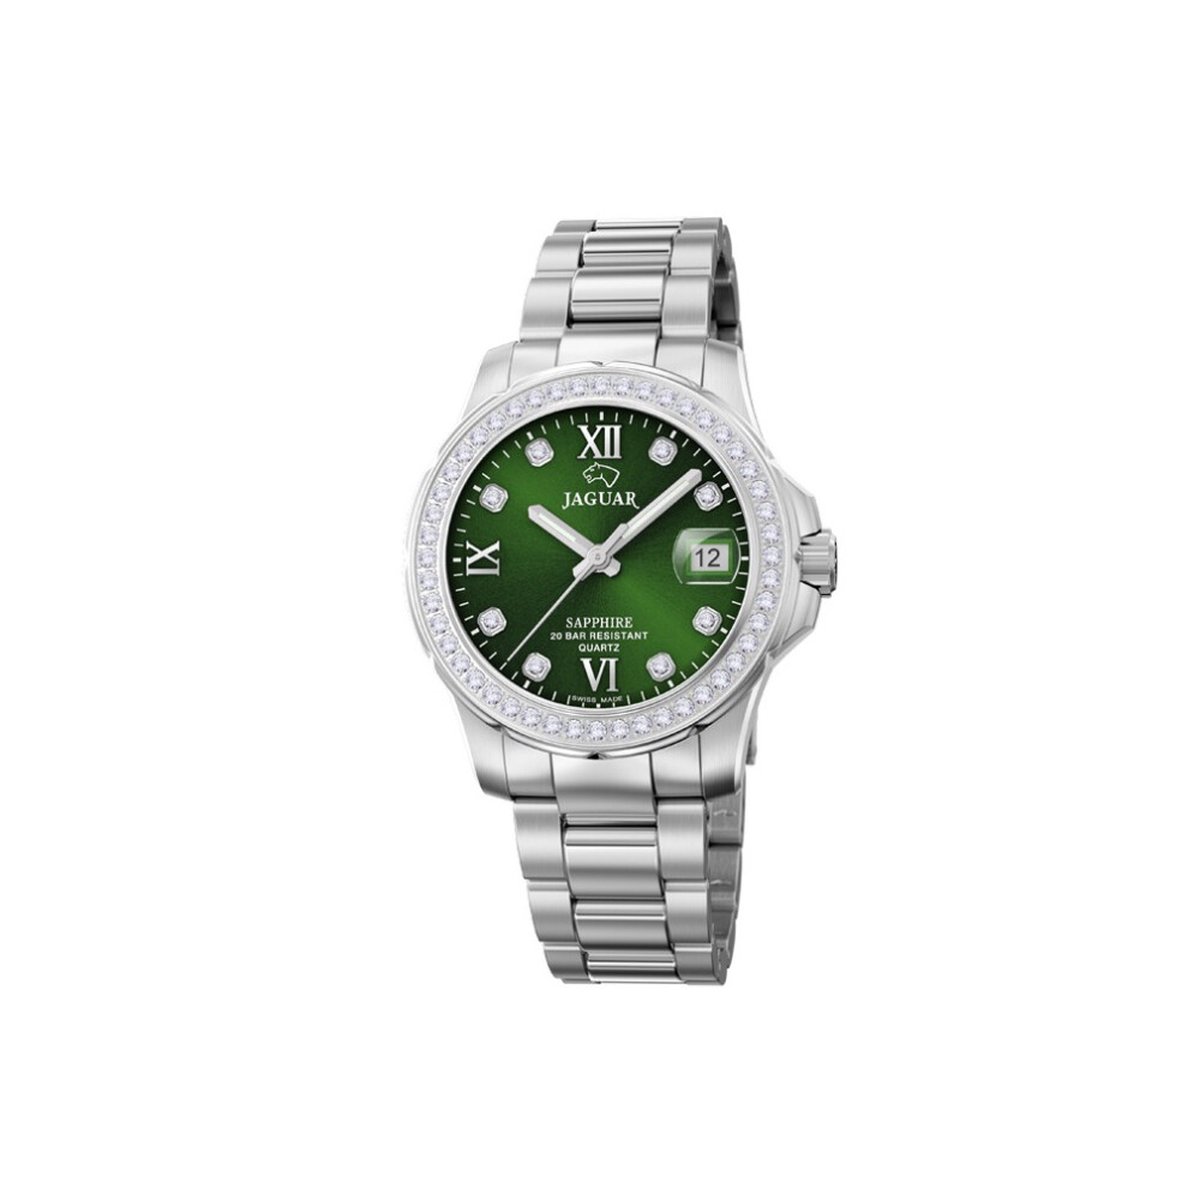 Jaguar Executive Diver Ladies Horloge - Jaguar dames horloge - Groen - diameter 34.5 mm - roestvrij staal